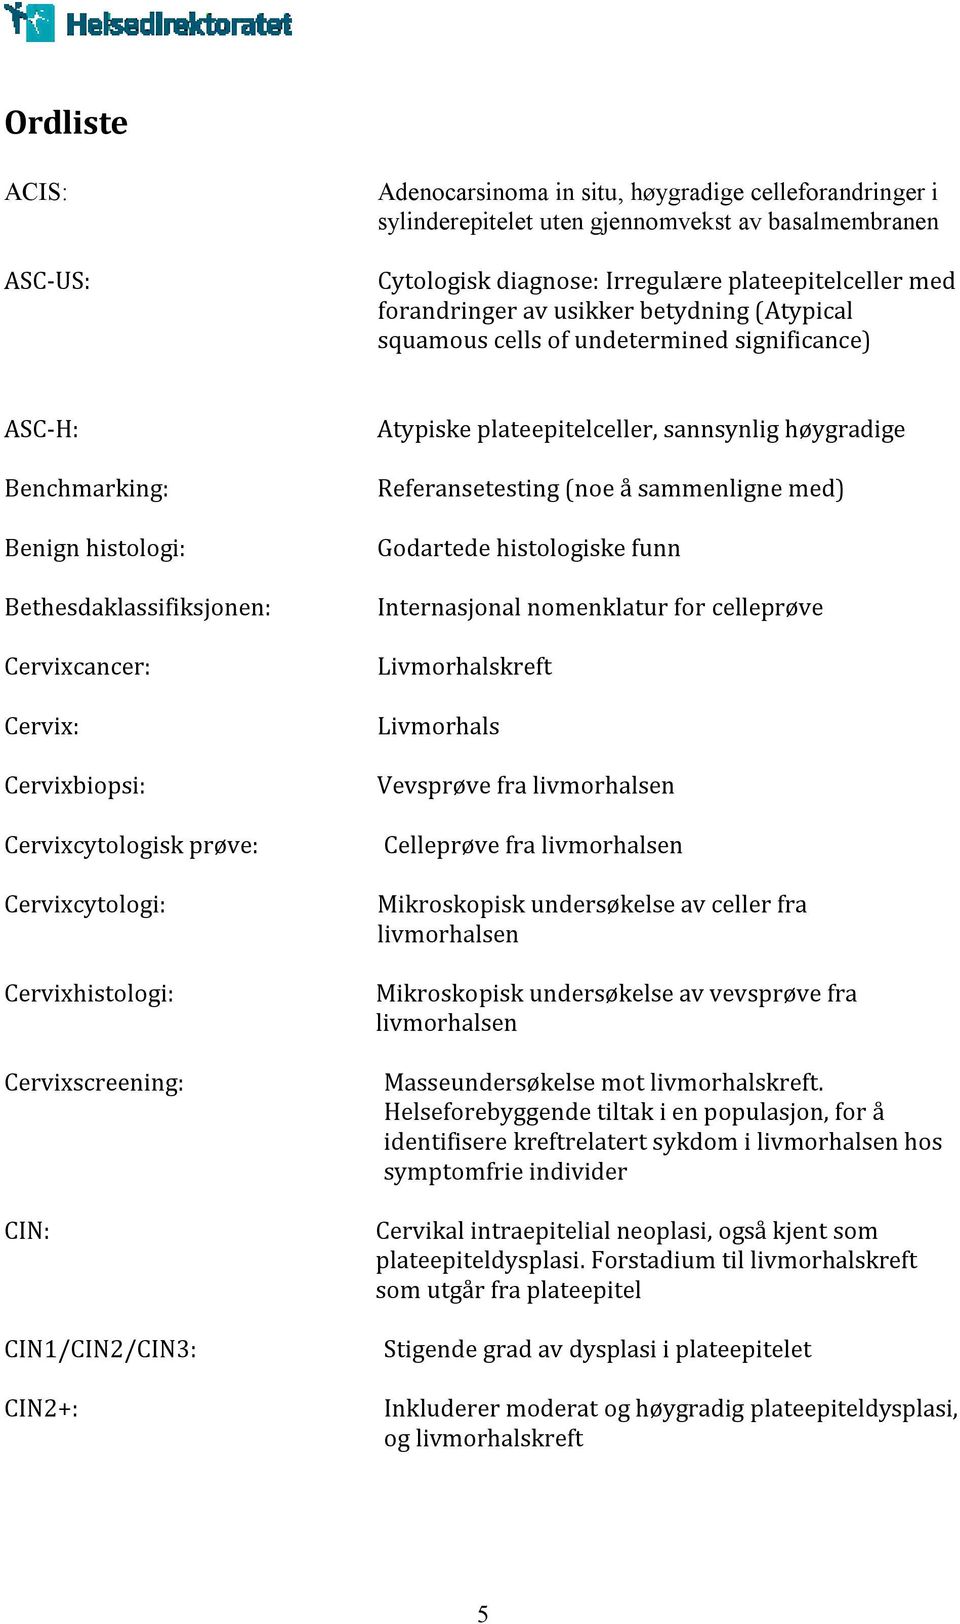 Cervixcytologi: Cervixhistologi: Cervixscreening: CIN: CIN1/CIN2/CIN3: CIN2+: Atypiske plateepitelceller, sannsynlig høygradige Referansetesting (noe å sammenligne med) Godartede histologiske funn